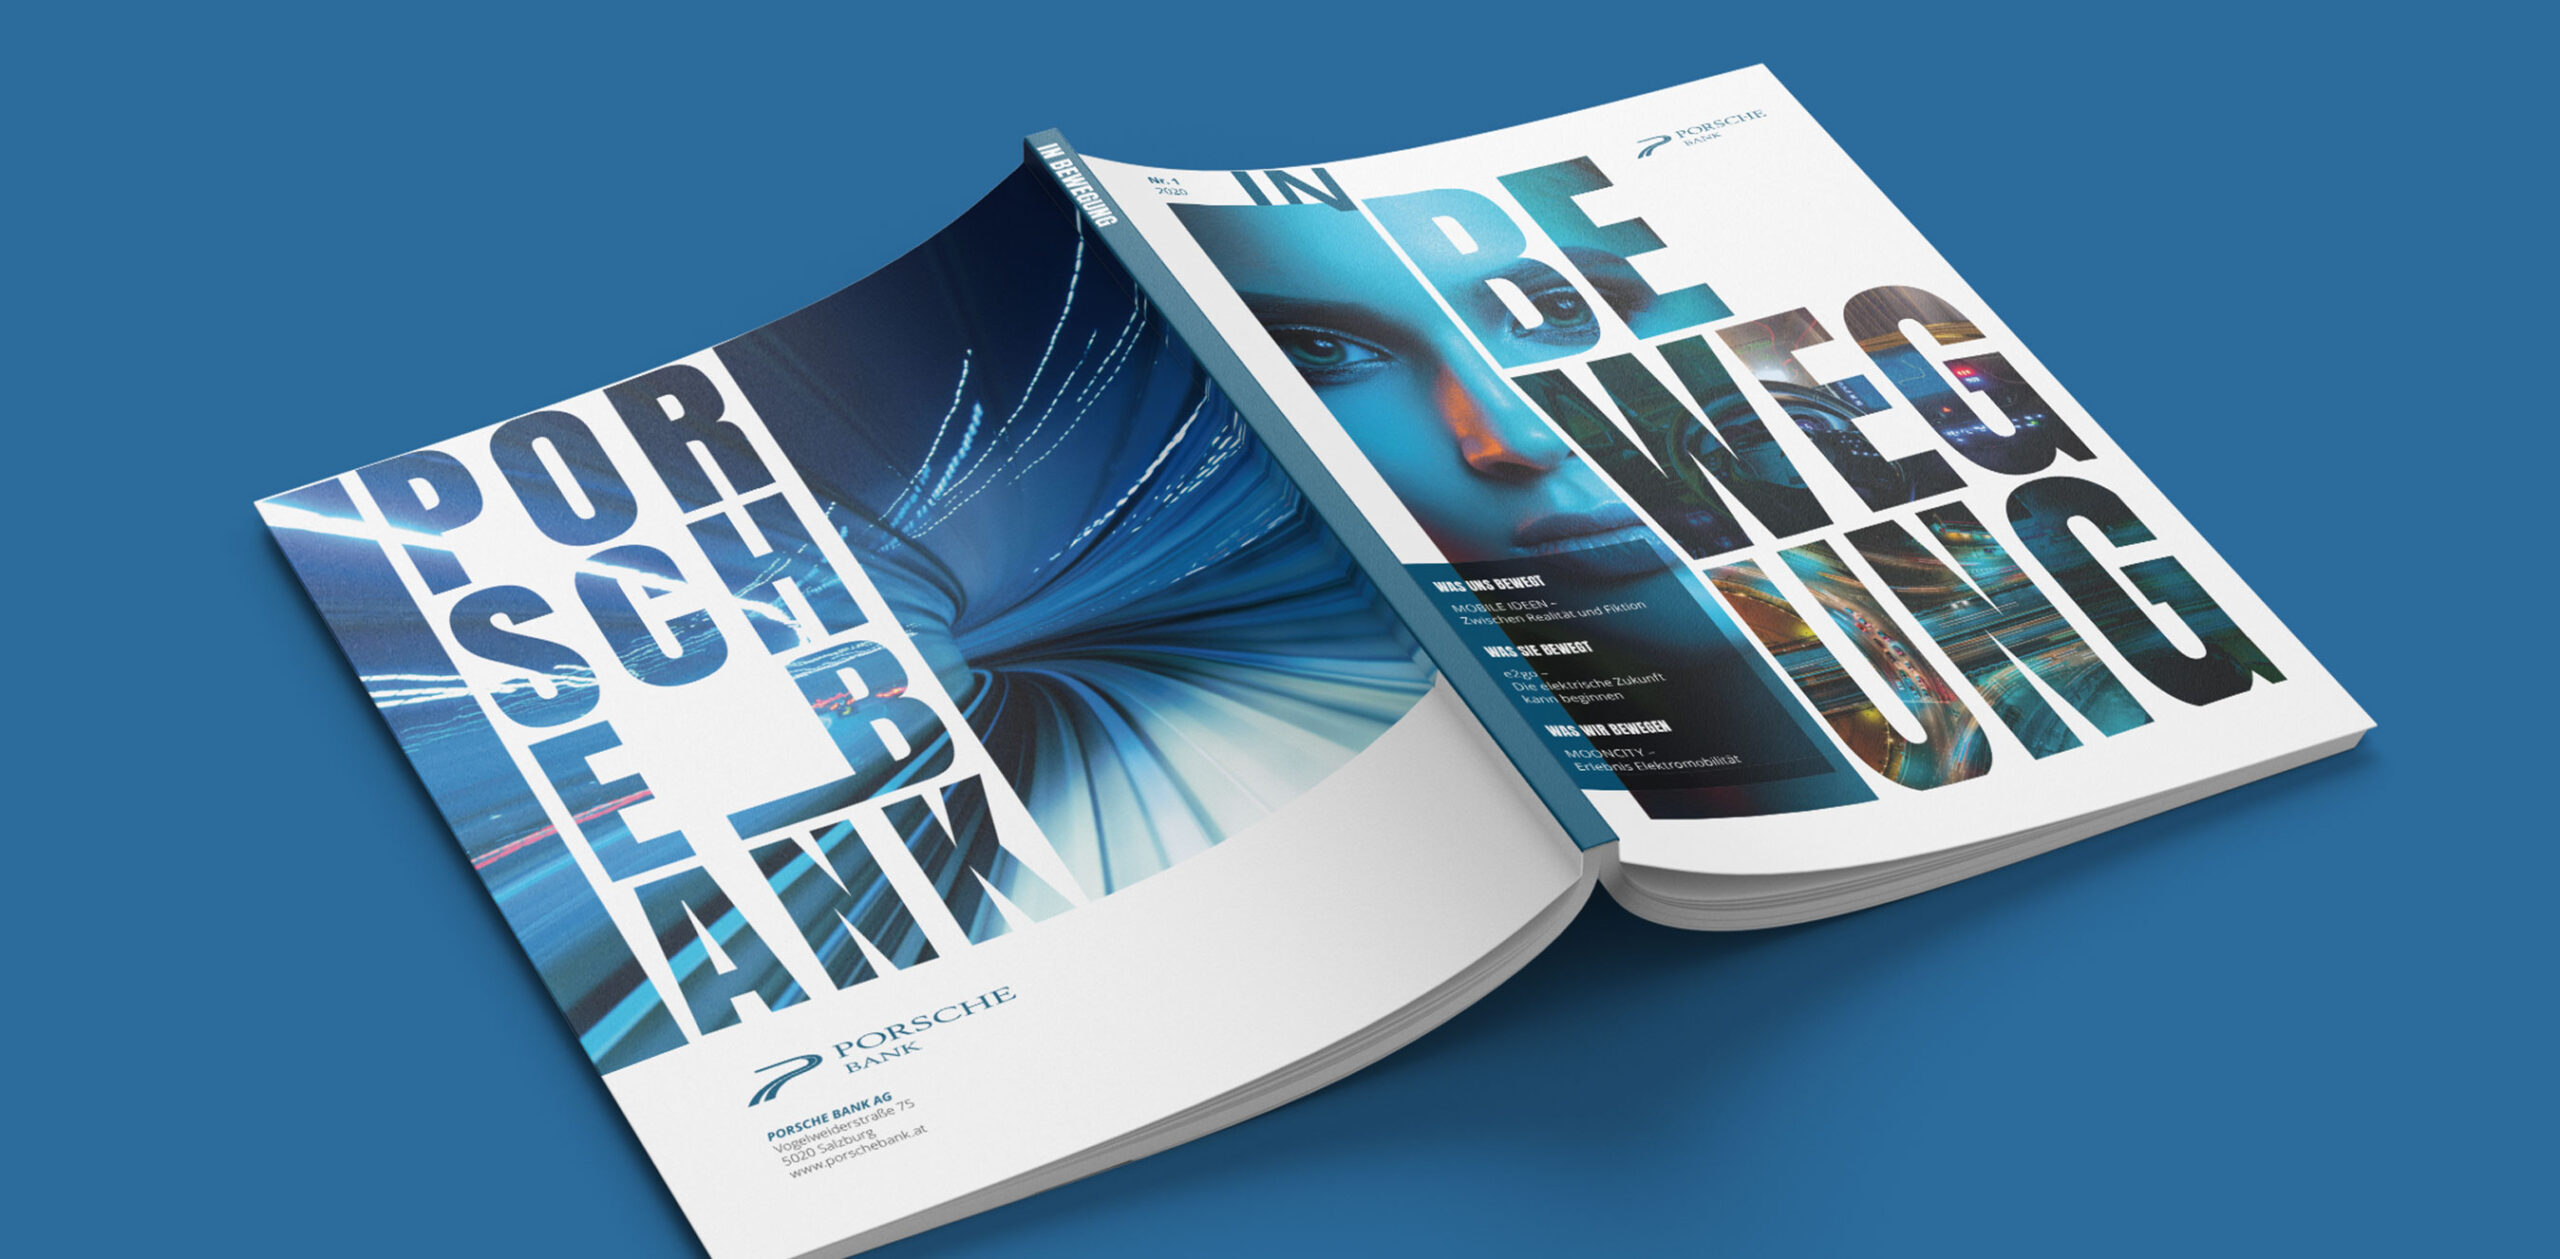 Porsche Bank Kundenmagazin Umschlaggestaltung